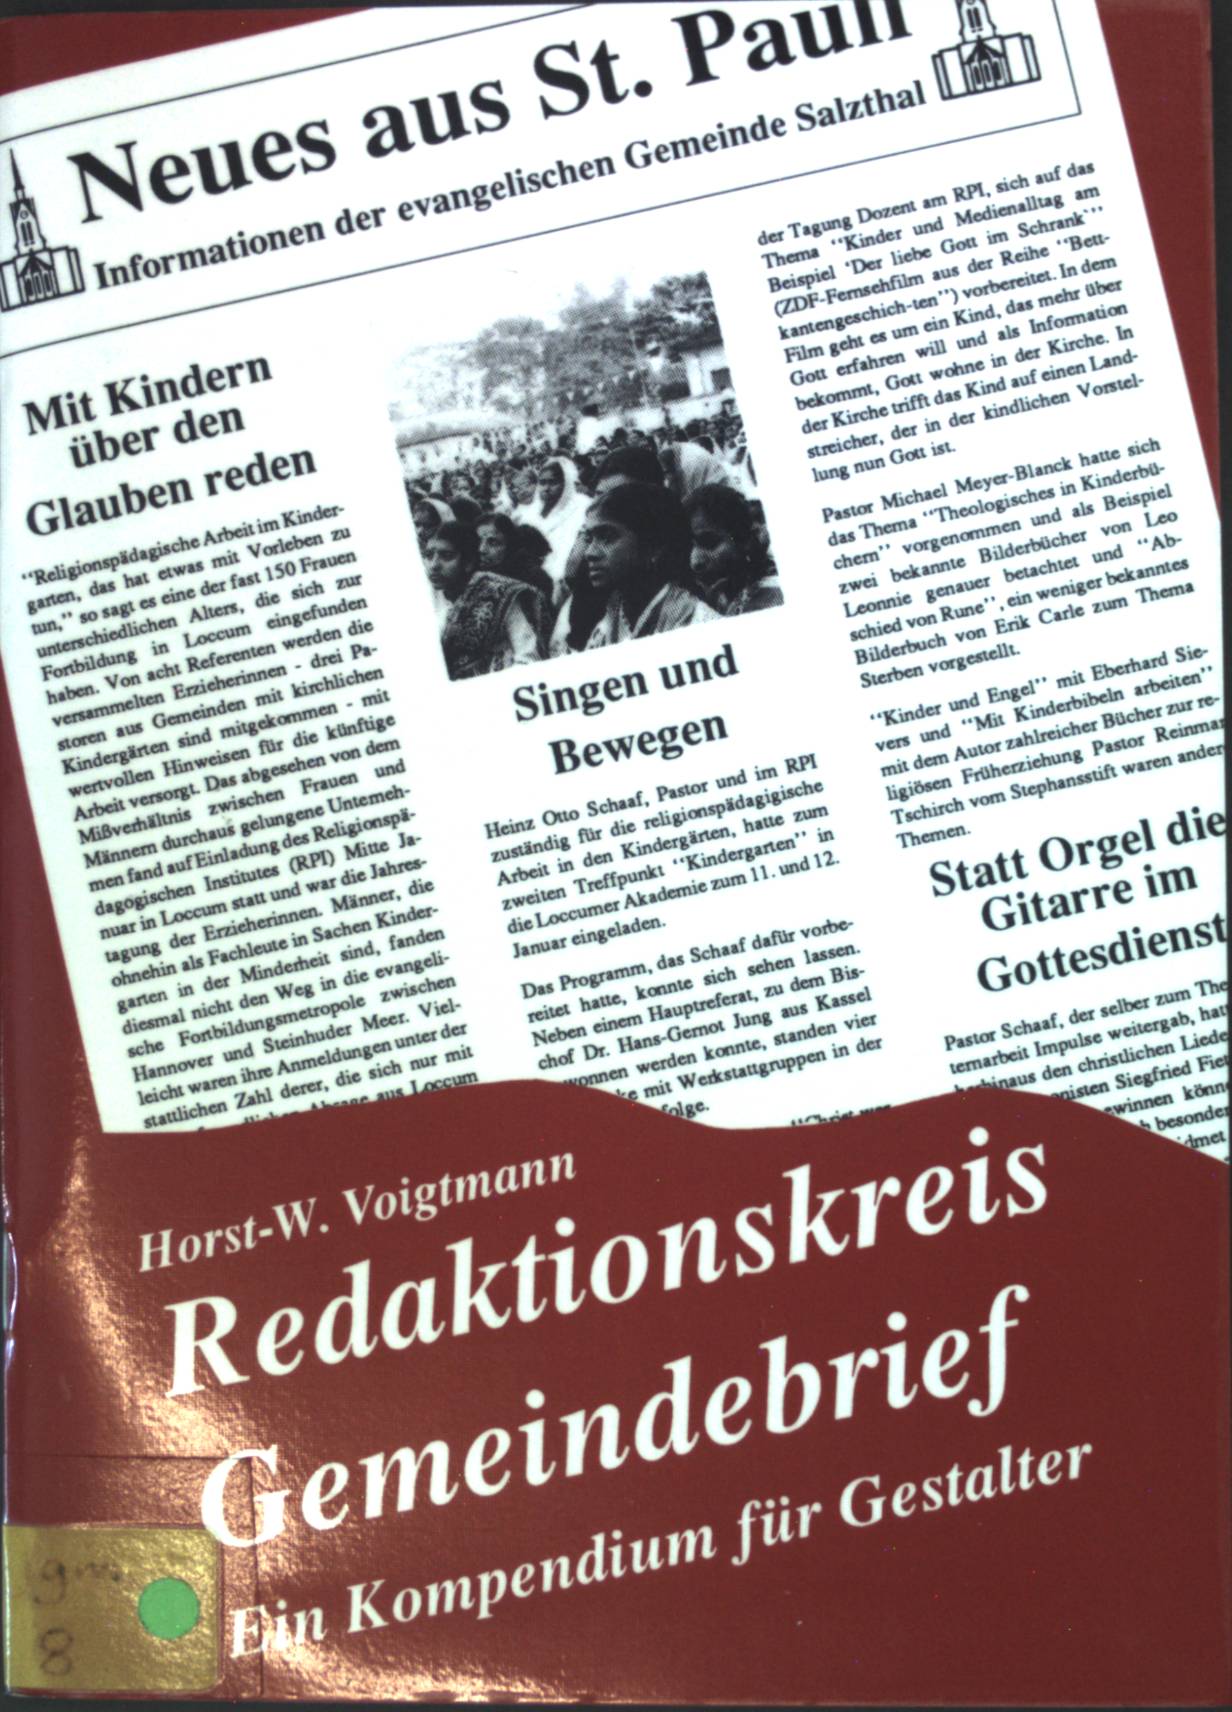 Redaktionskreis Gemeindebrief: Ein Kompendium für die Gestalter. - Voigtmann, Horst-Werner